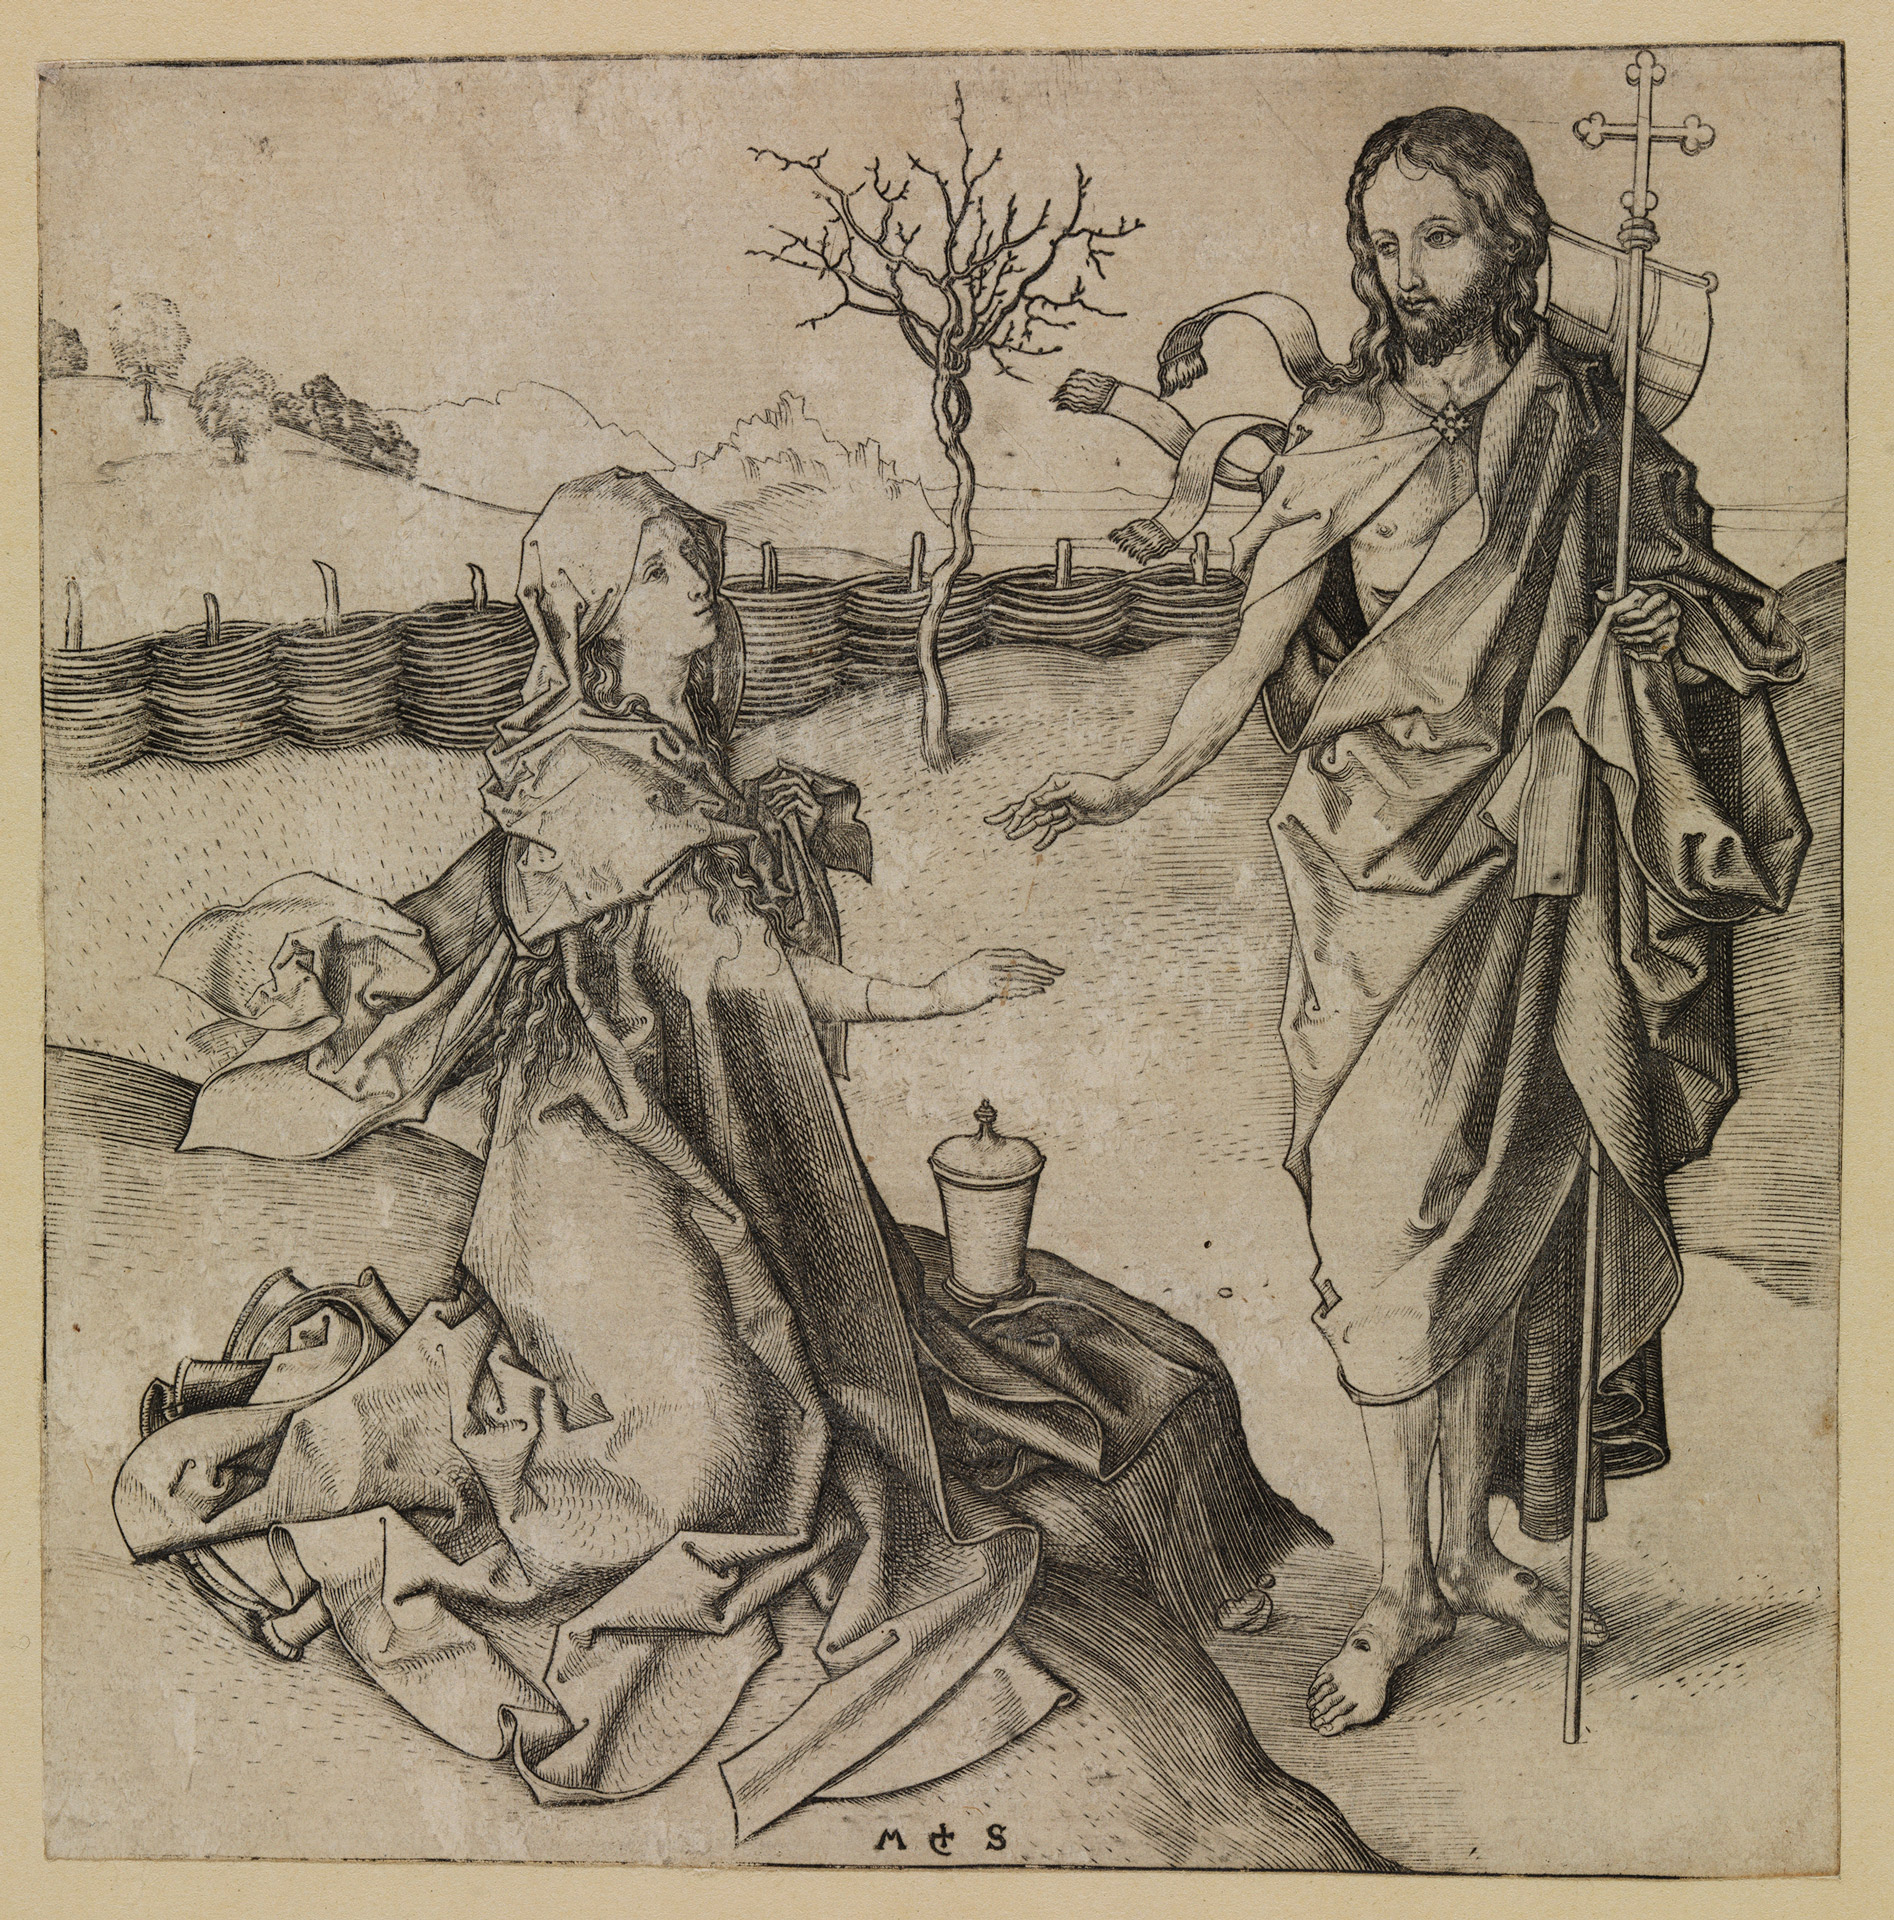 Abbildung des Kupferstichs Noli me tangere von Martin Schongauer entstanden in der zweiten Hälfte des 15. Jahrhunderts.